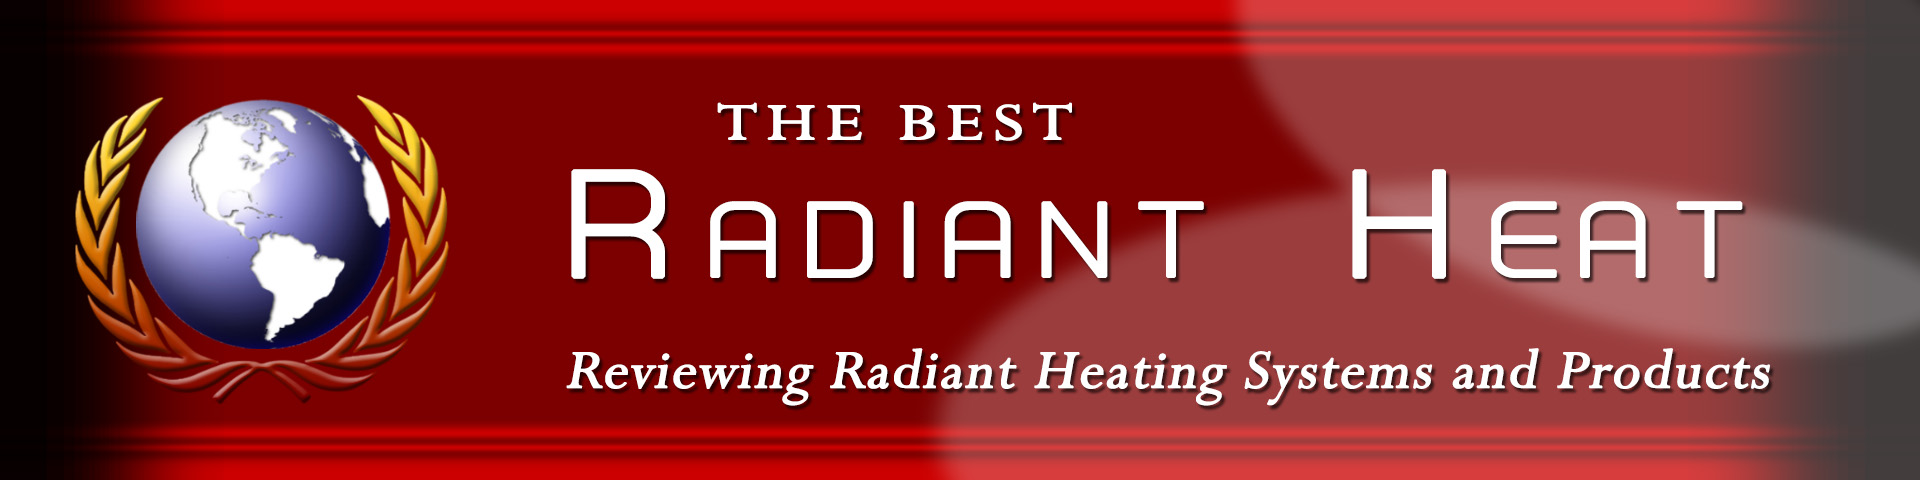 Best radiant heat banner.